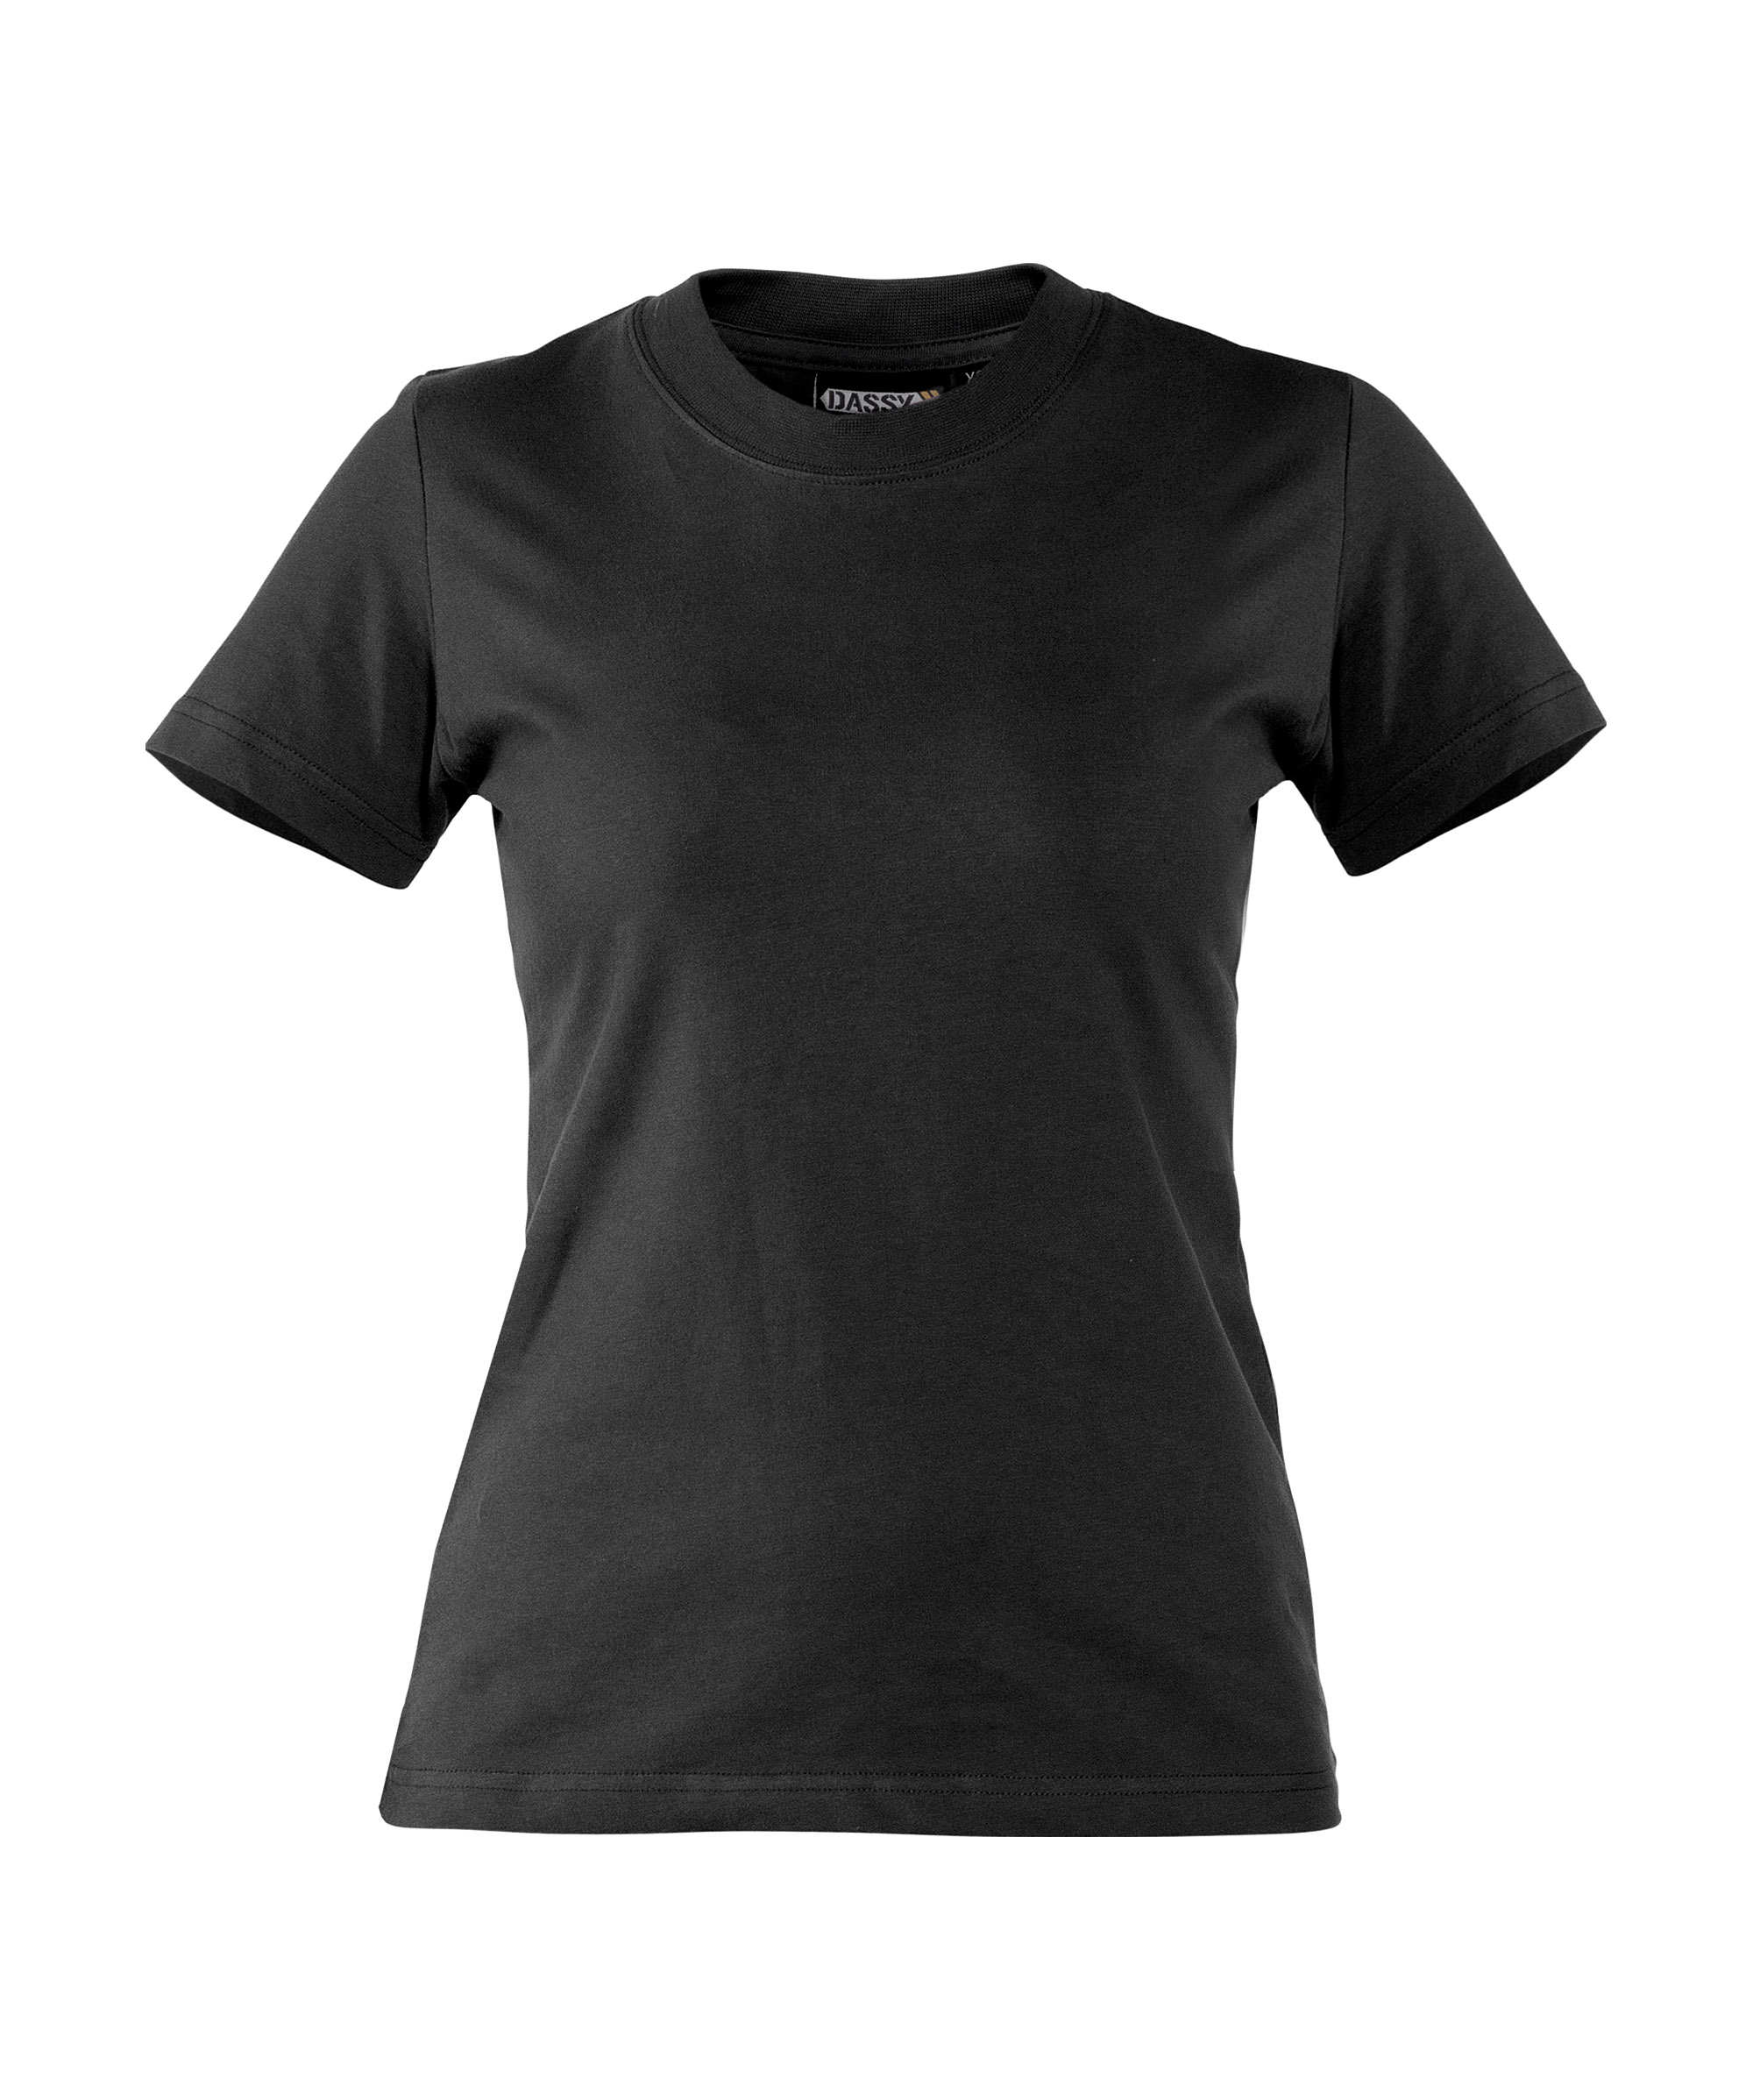 oscar-women_t-shirt_black_front.jpg